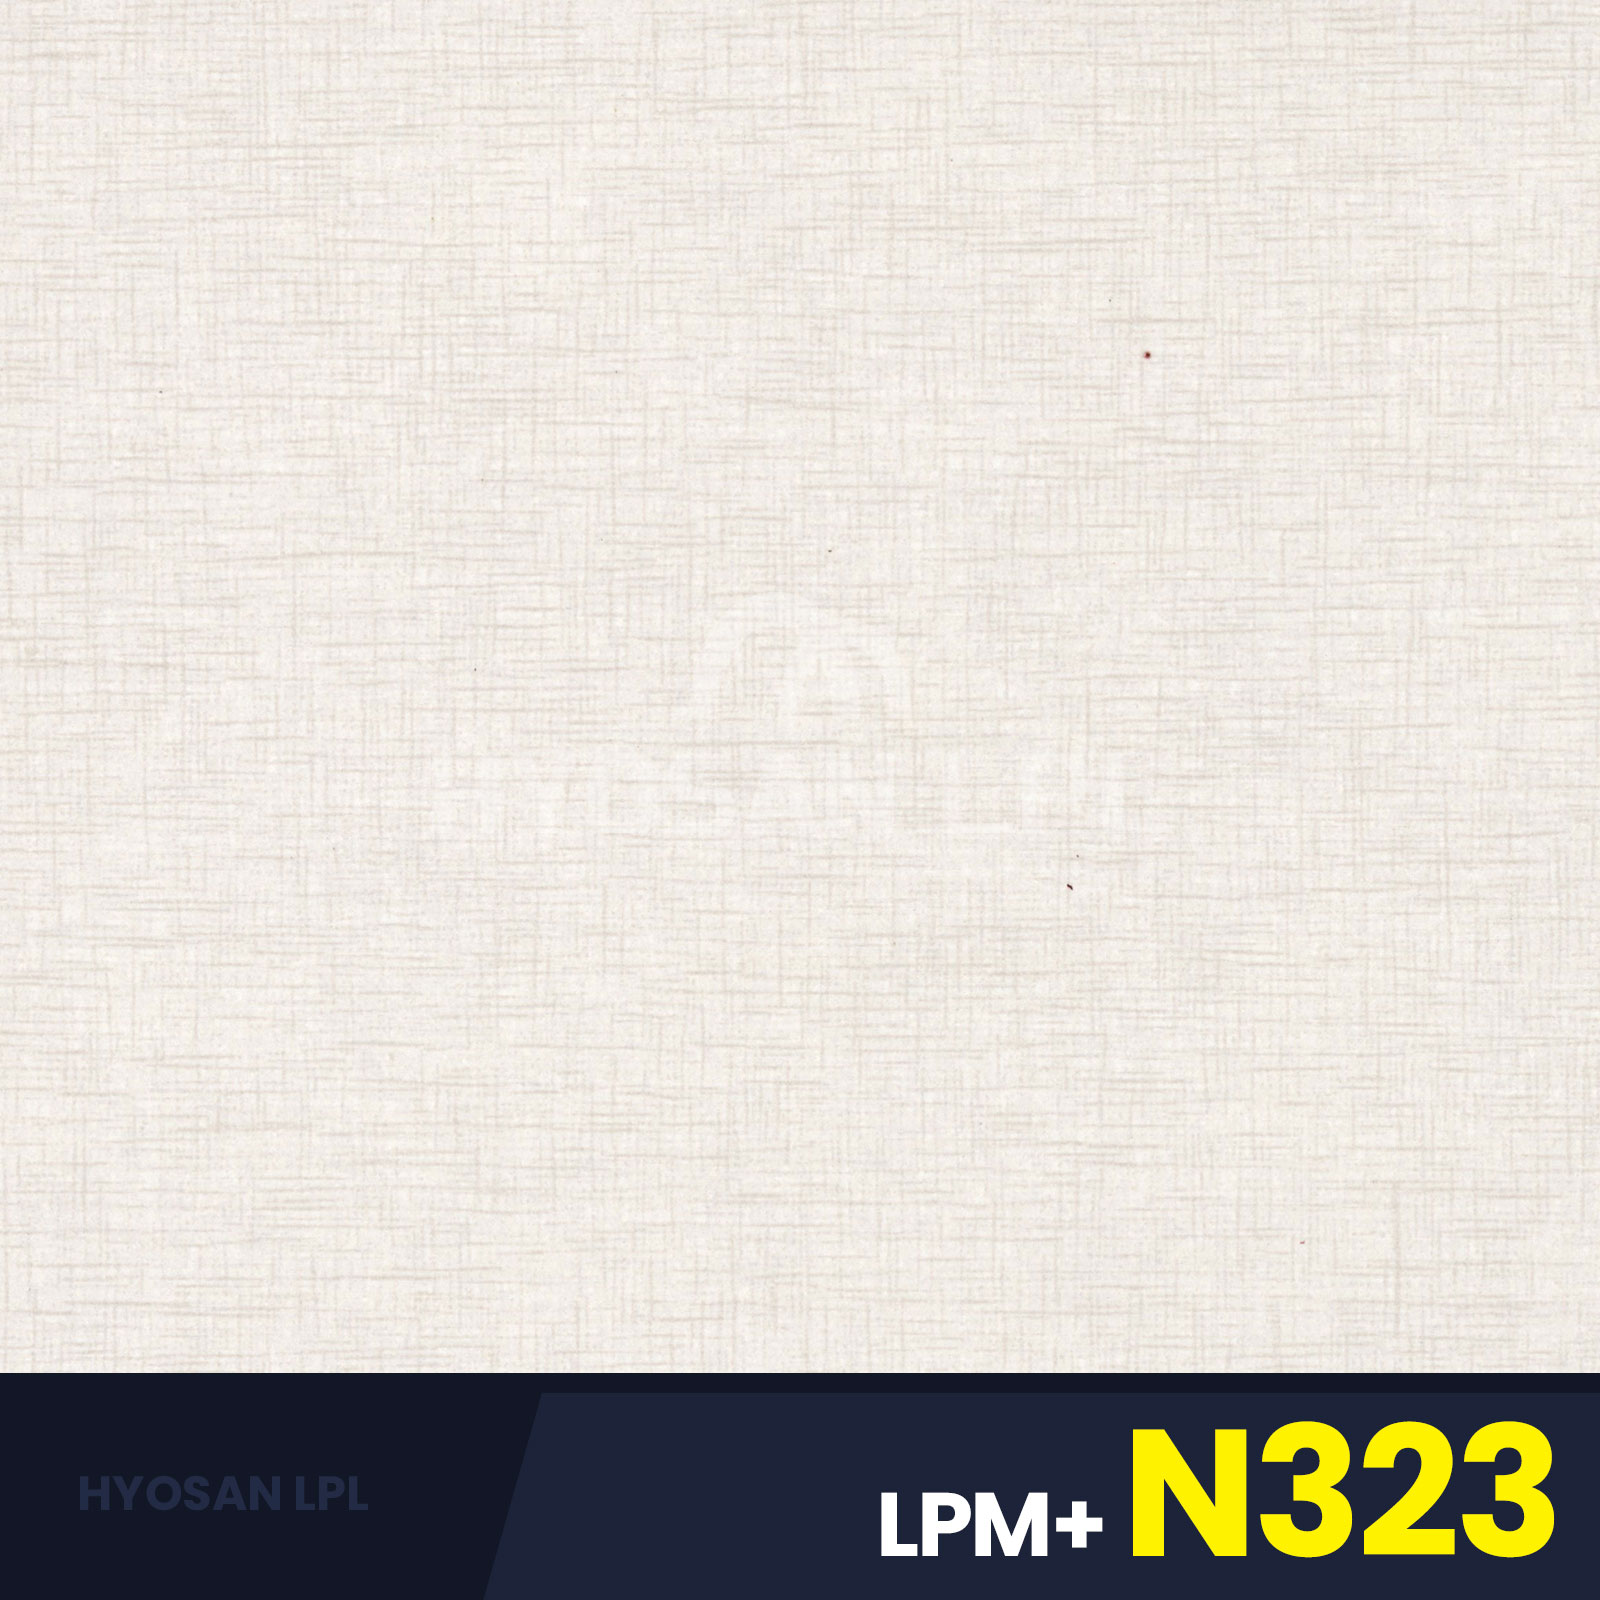 LPM+N323